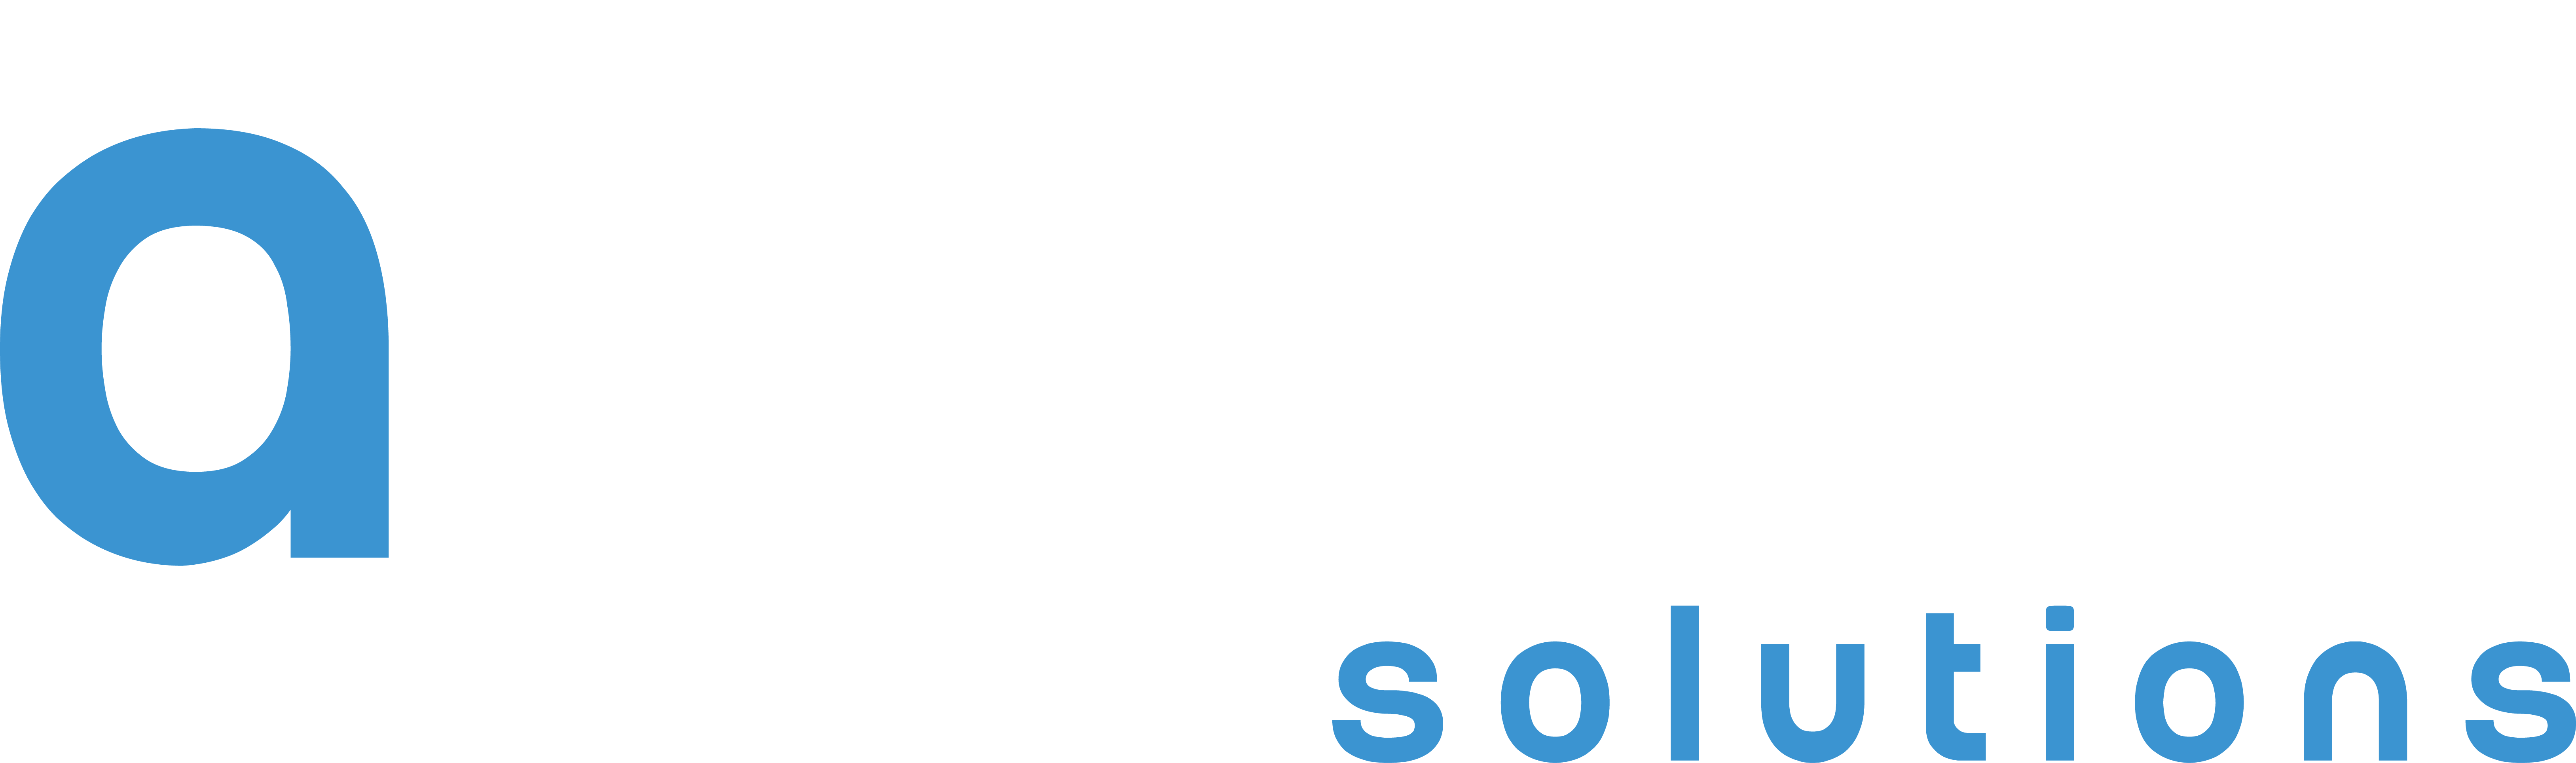 Logo Adquat Solutions blanc